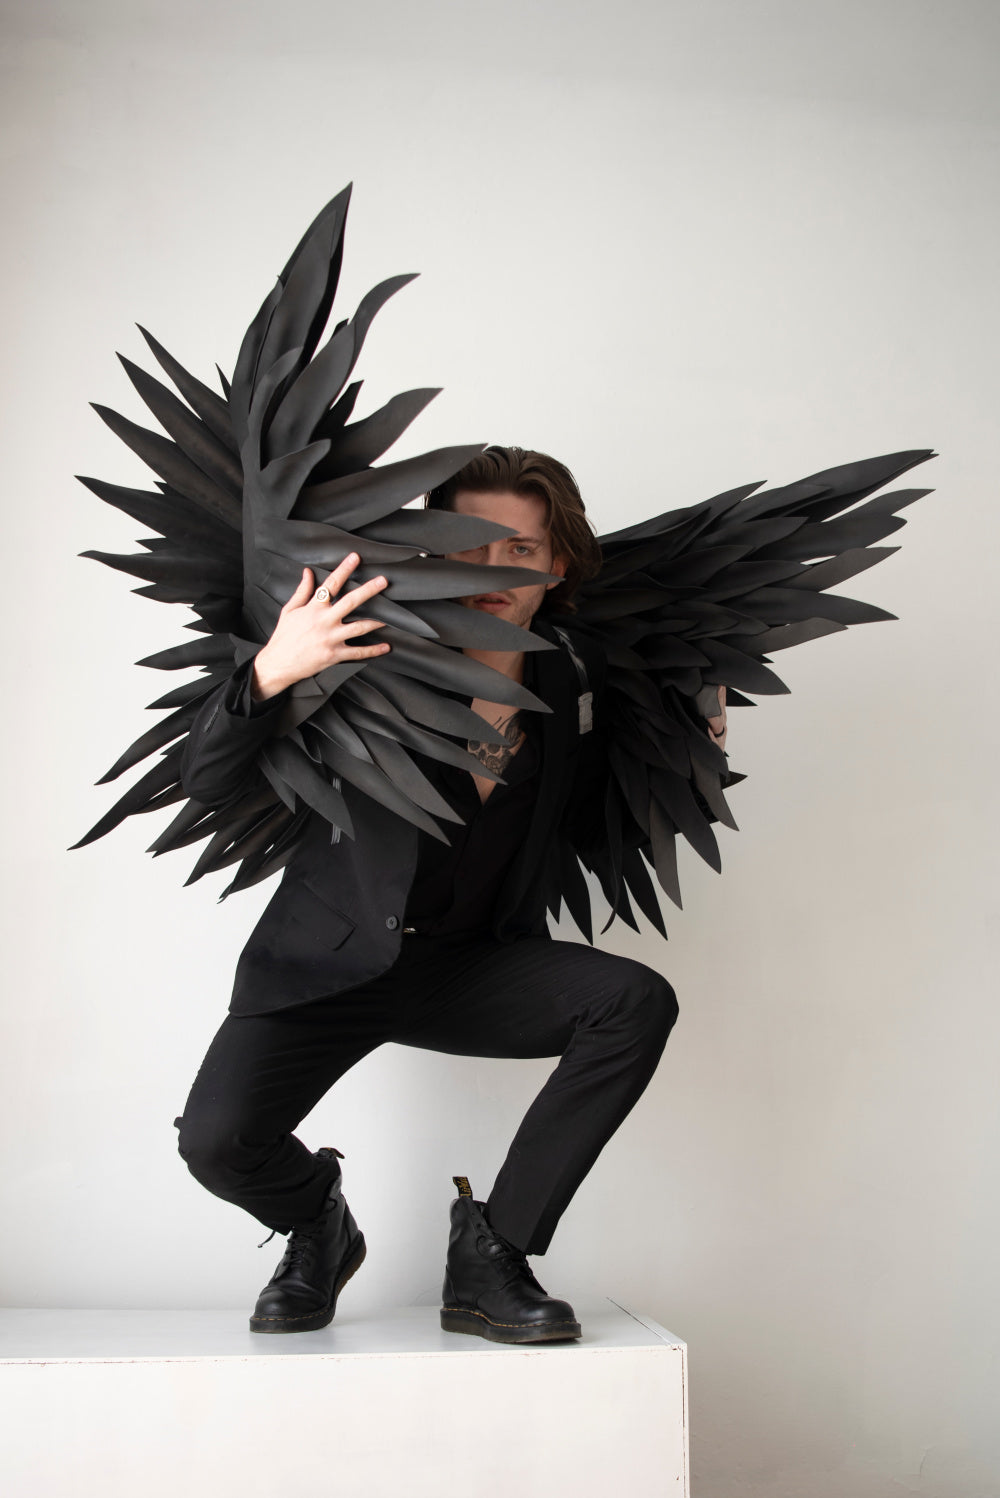 black angel wings costume for men